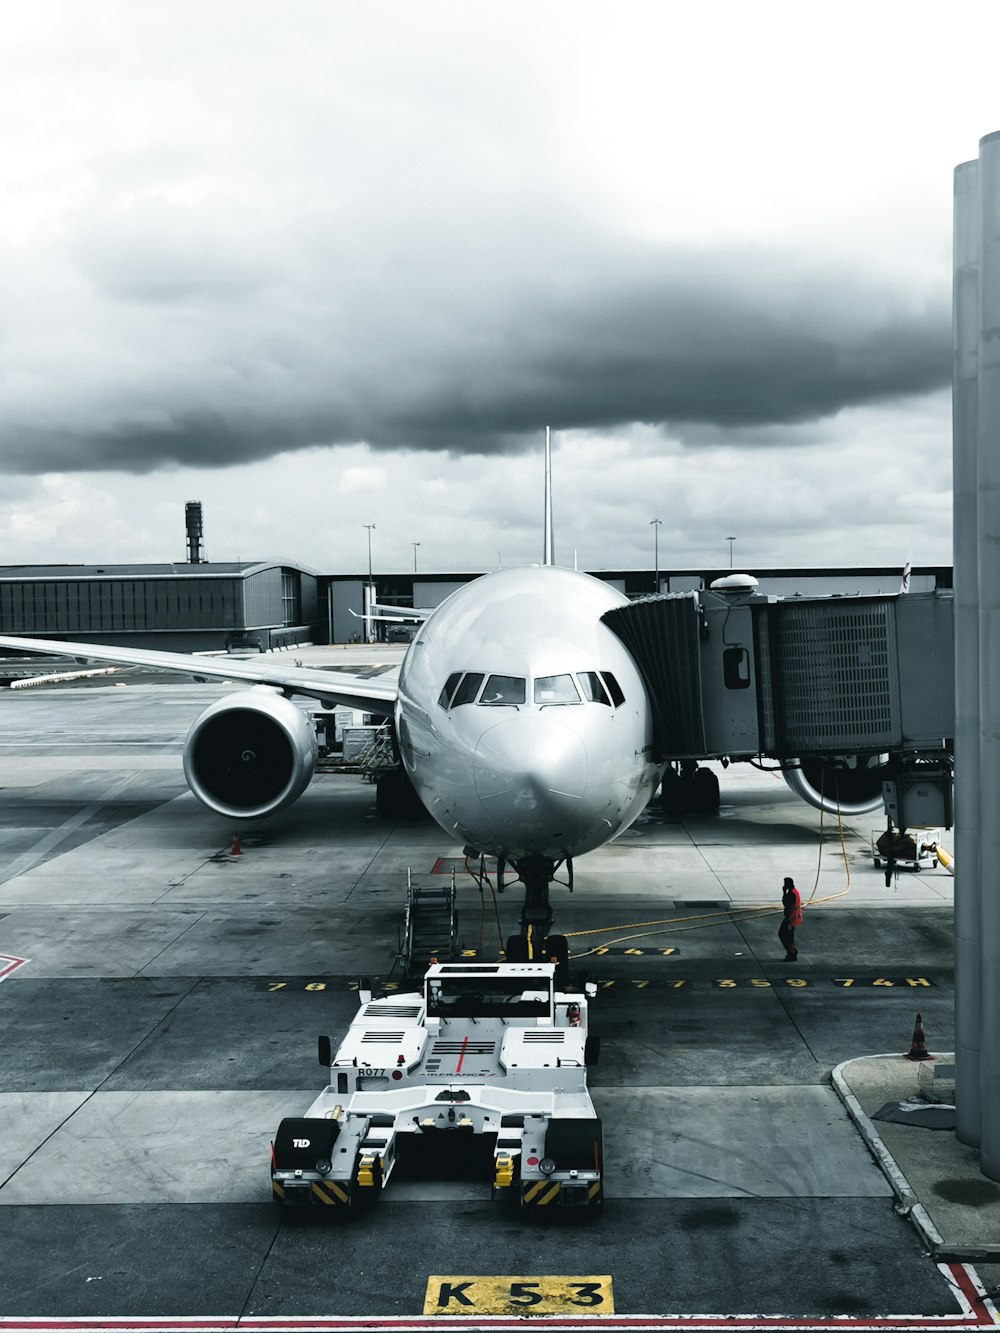 Photographie en niveaux de gris d’un avion de passagers